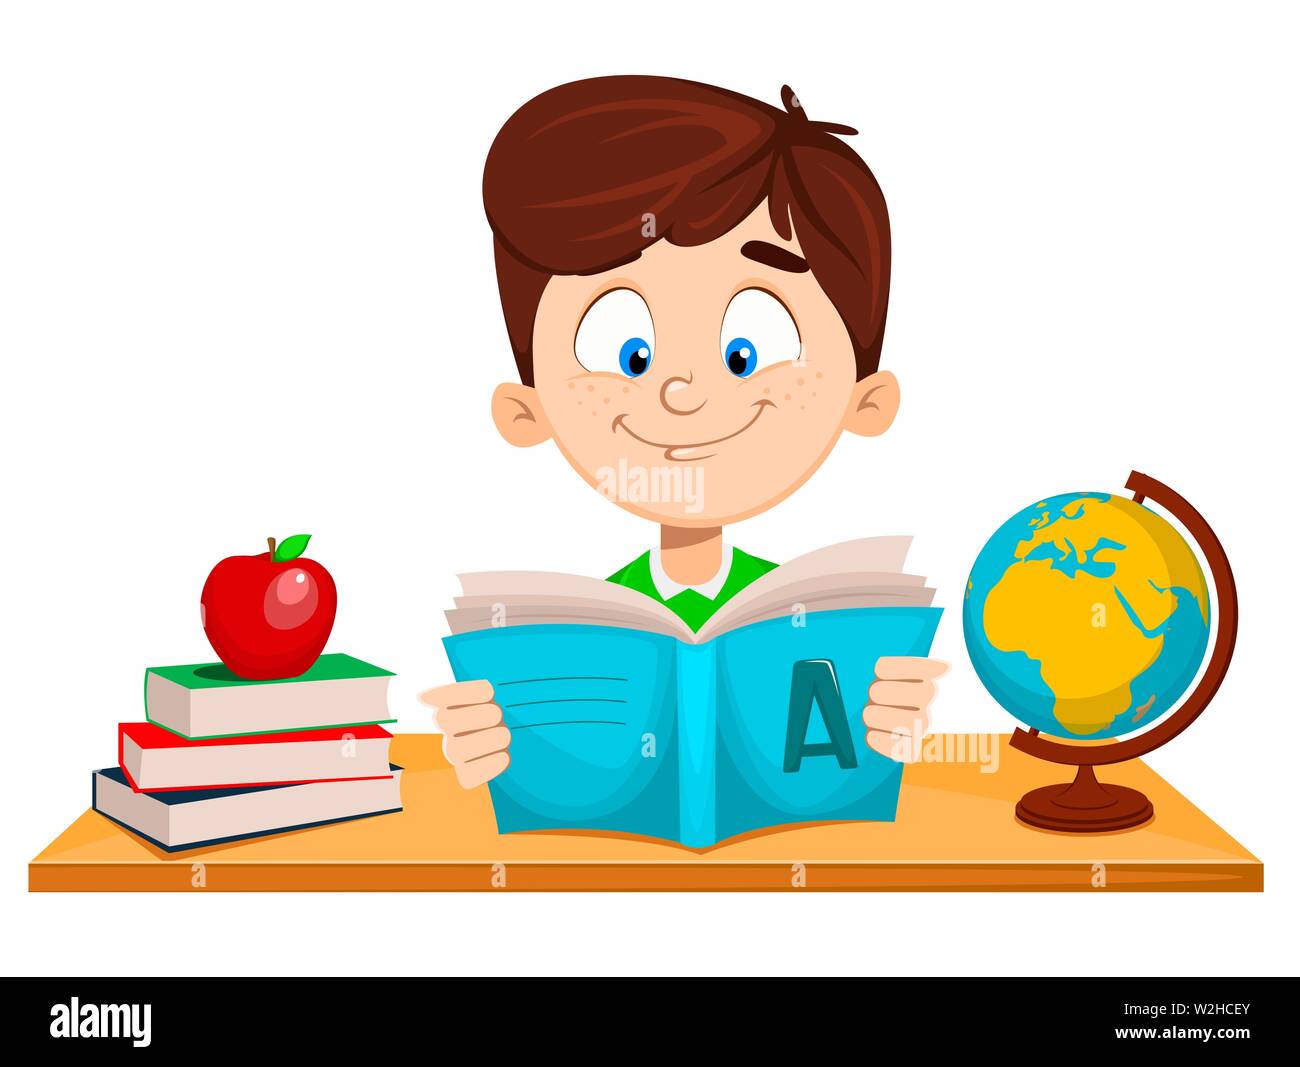 si torna a scuola carino ragazzo seduto al tavolo e la lettura del libro di abc divertente personaggio dei fumetti illustrazione vettoriale w2hc